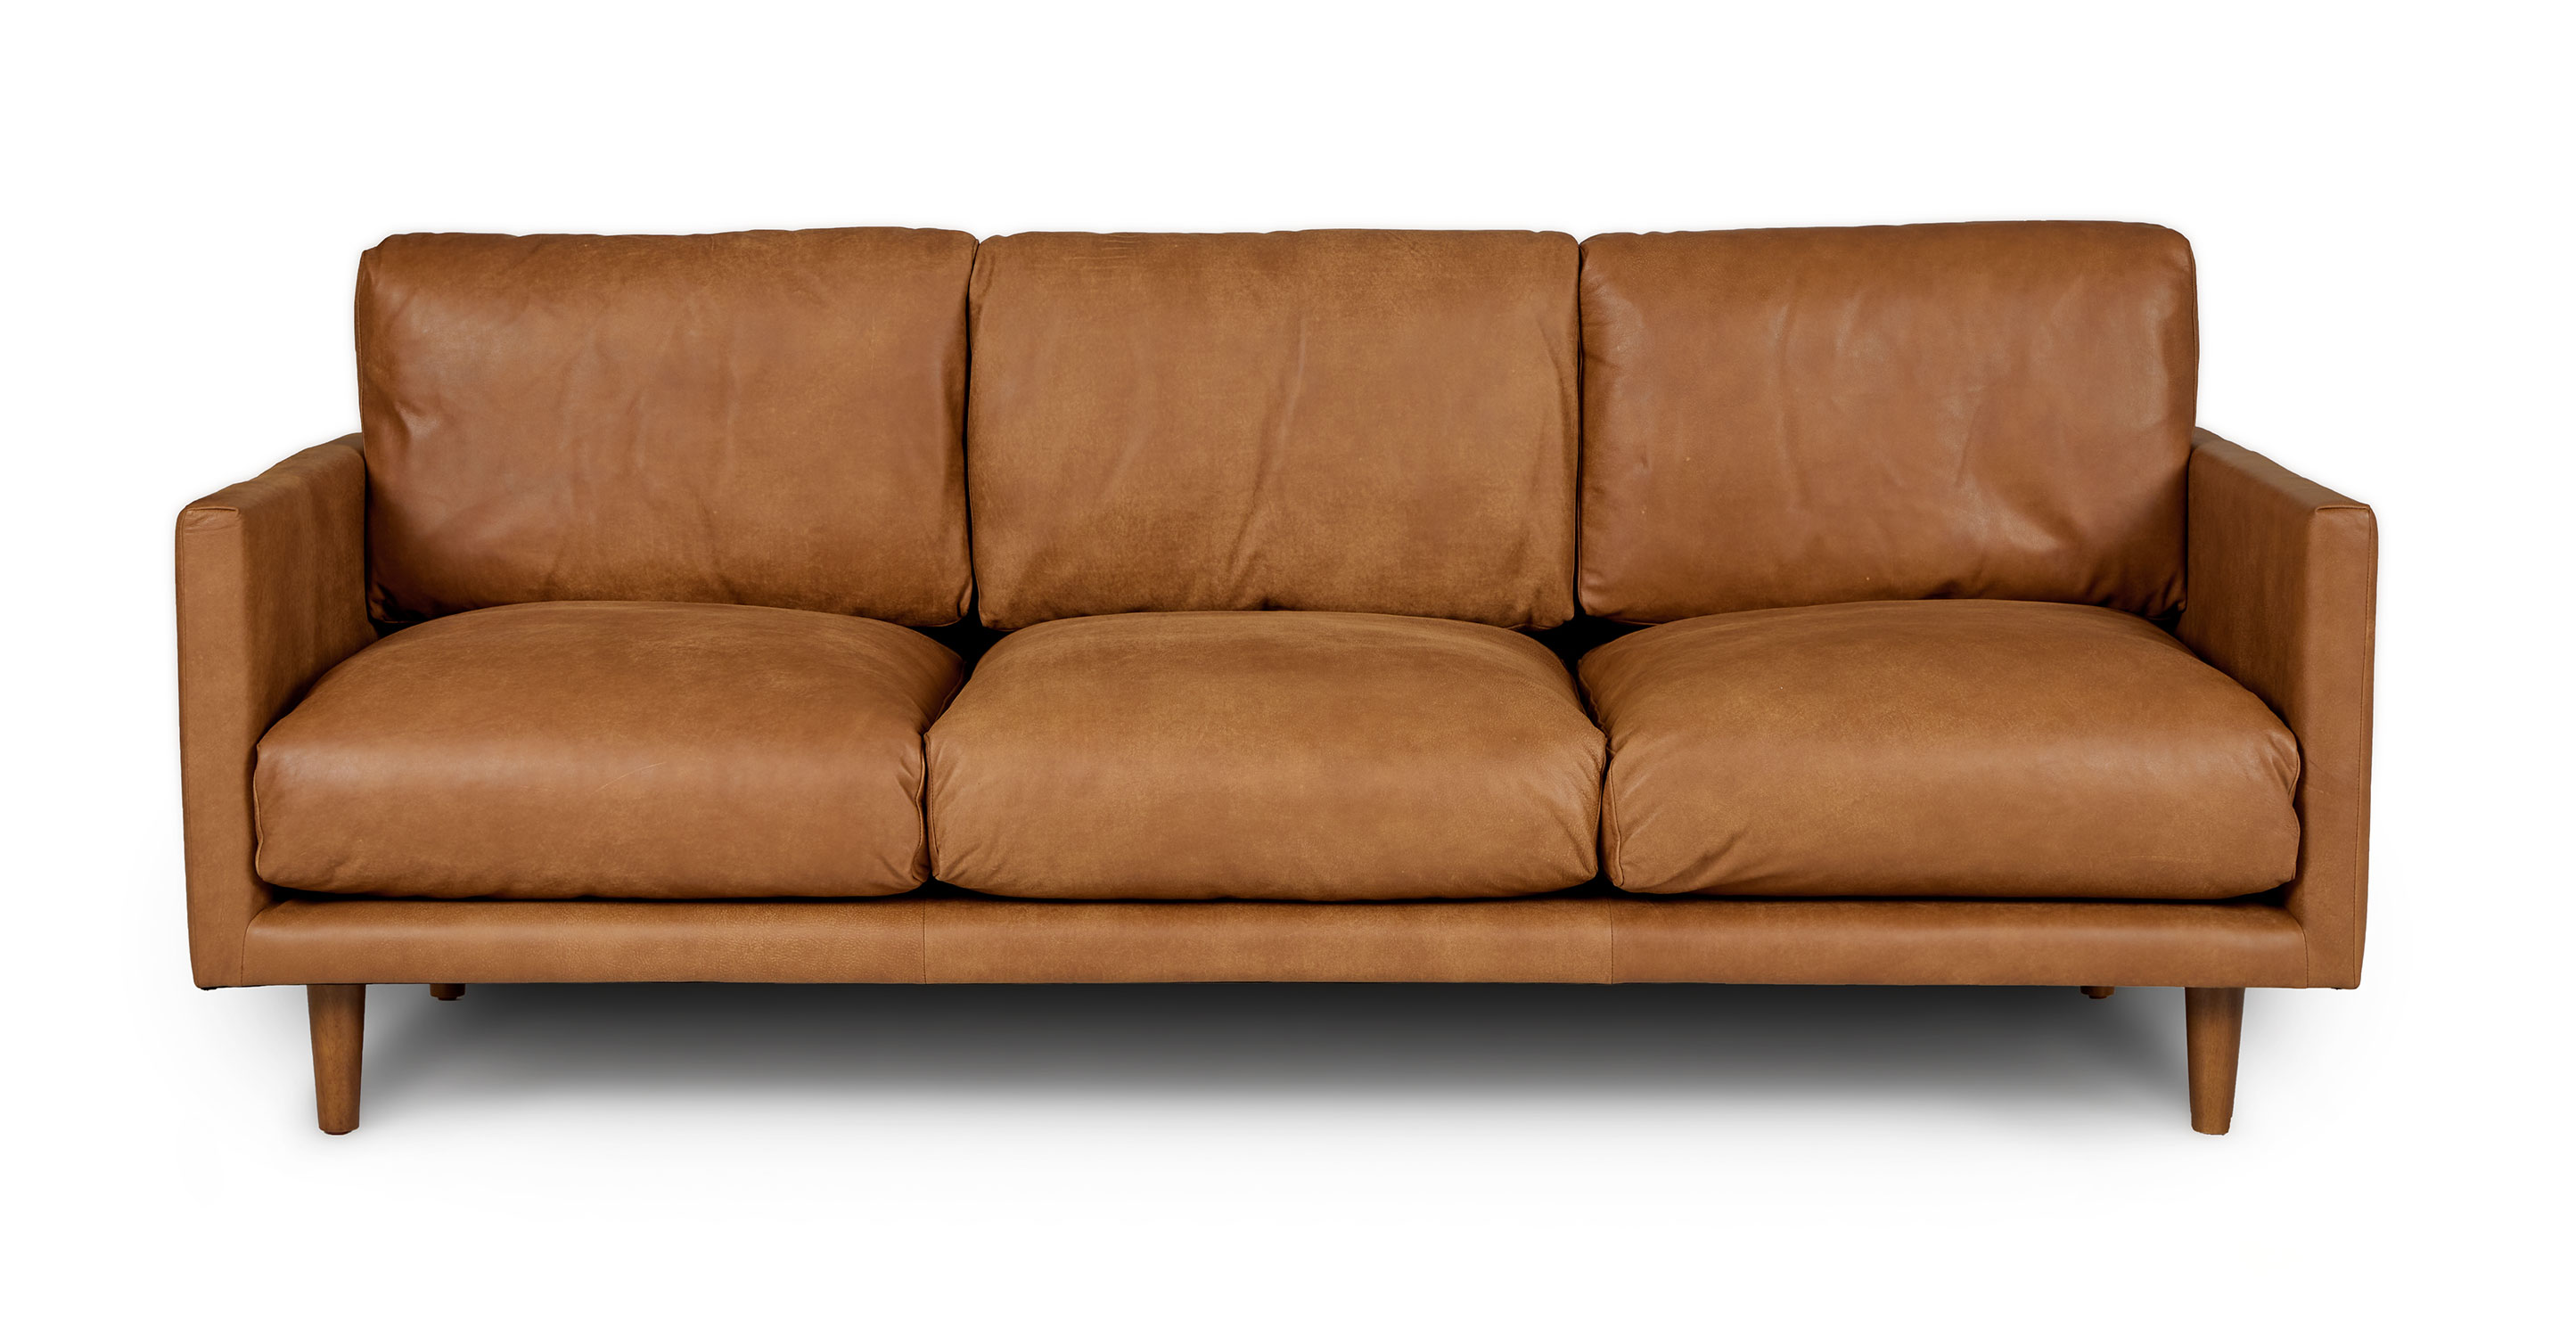 Educación escolar Ánimo textura Dakota Tan Nirvana 3 Seater Leather Industrial Sofa | Article